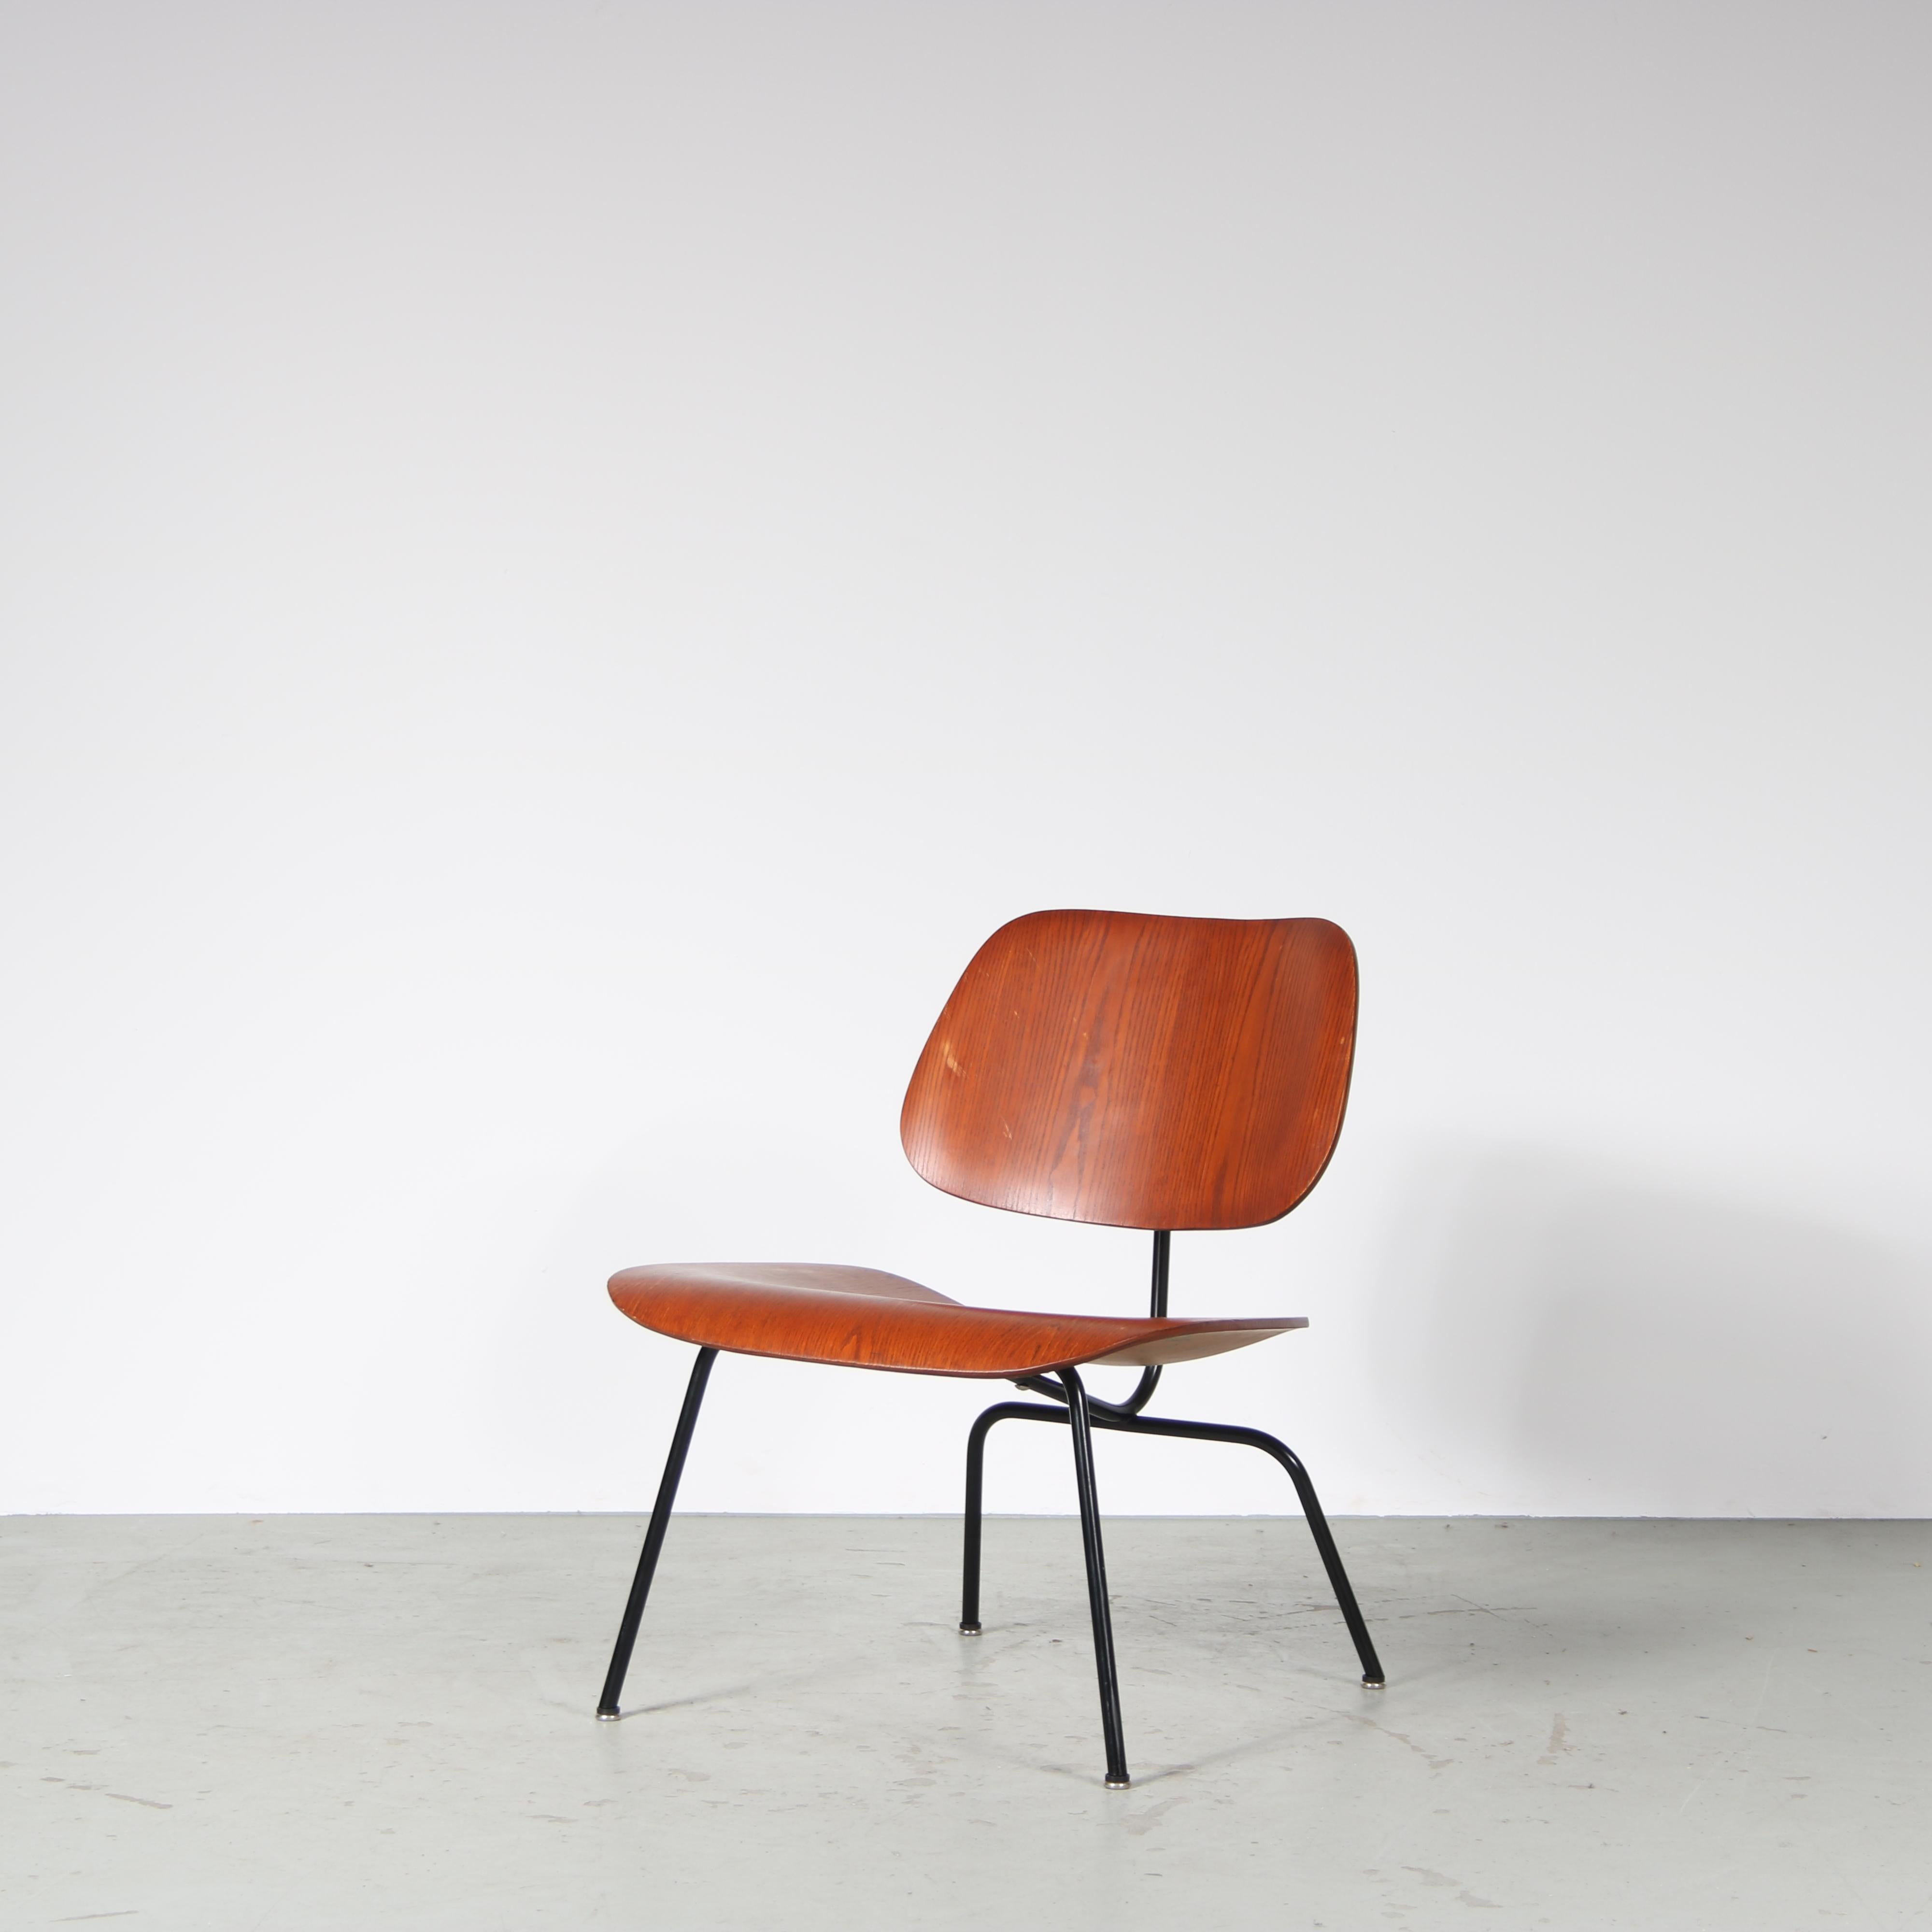 Ein ikonischer Sessel, Modell LCM, entworfen von Charles & Ray Eames und hergestellt von Evans in den USA um 1960.

LCM steht wegen des Metallgestells für Lounge Chair Metal